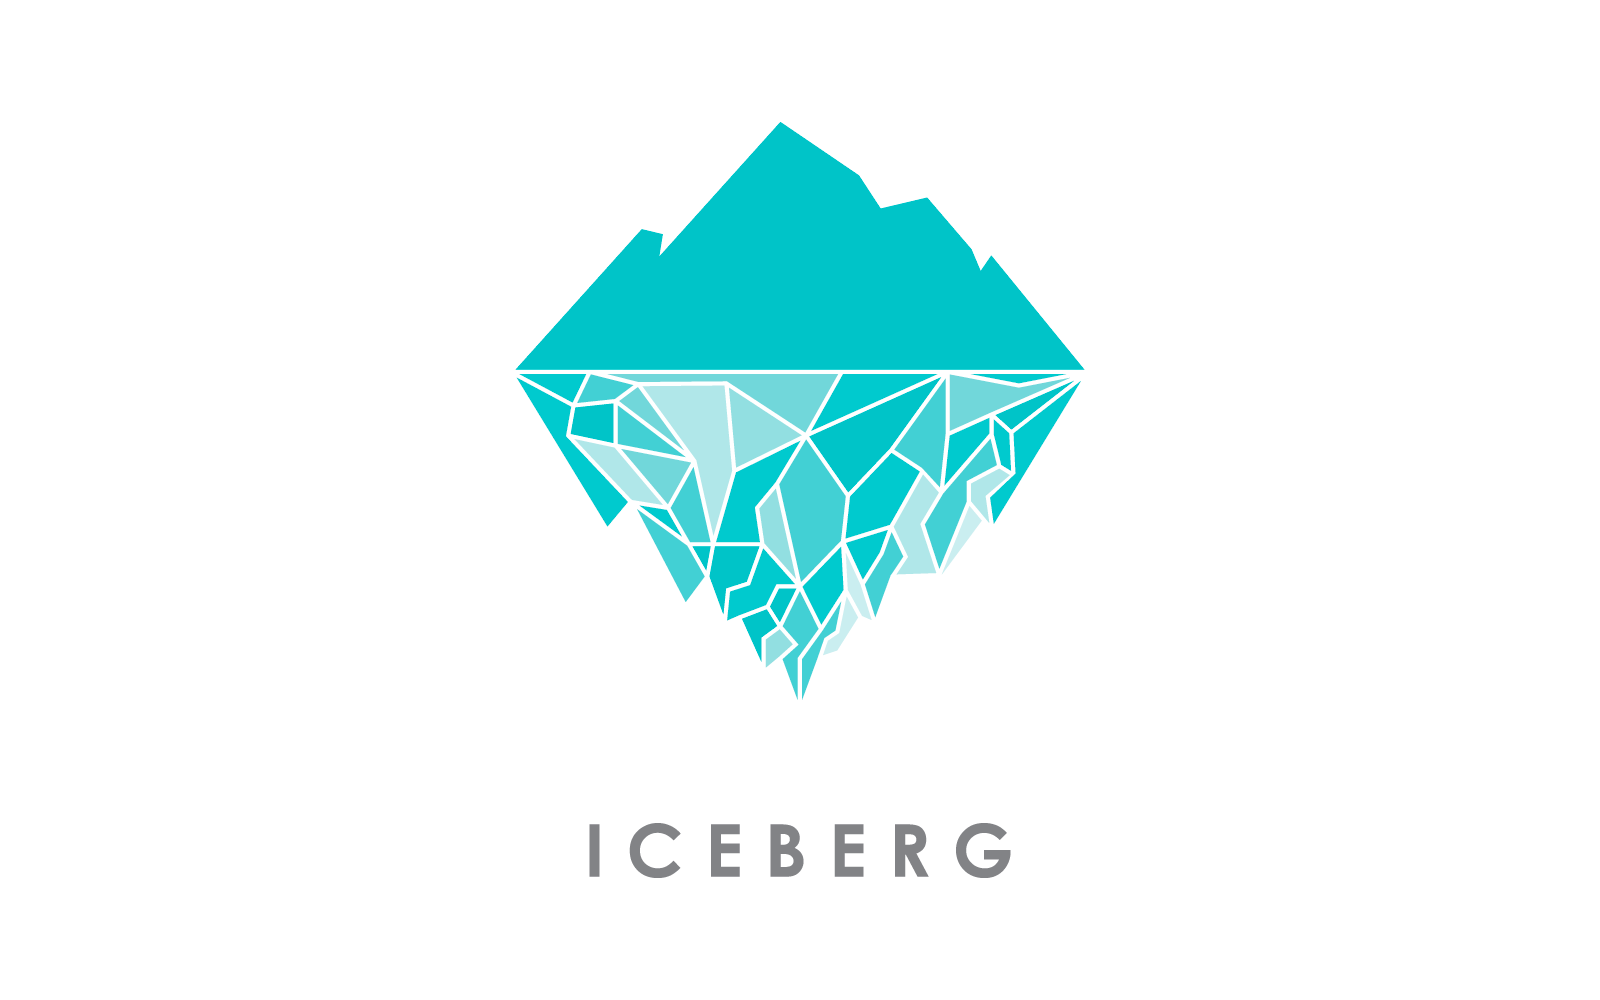 Iceberg illustration logo vector design